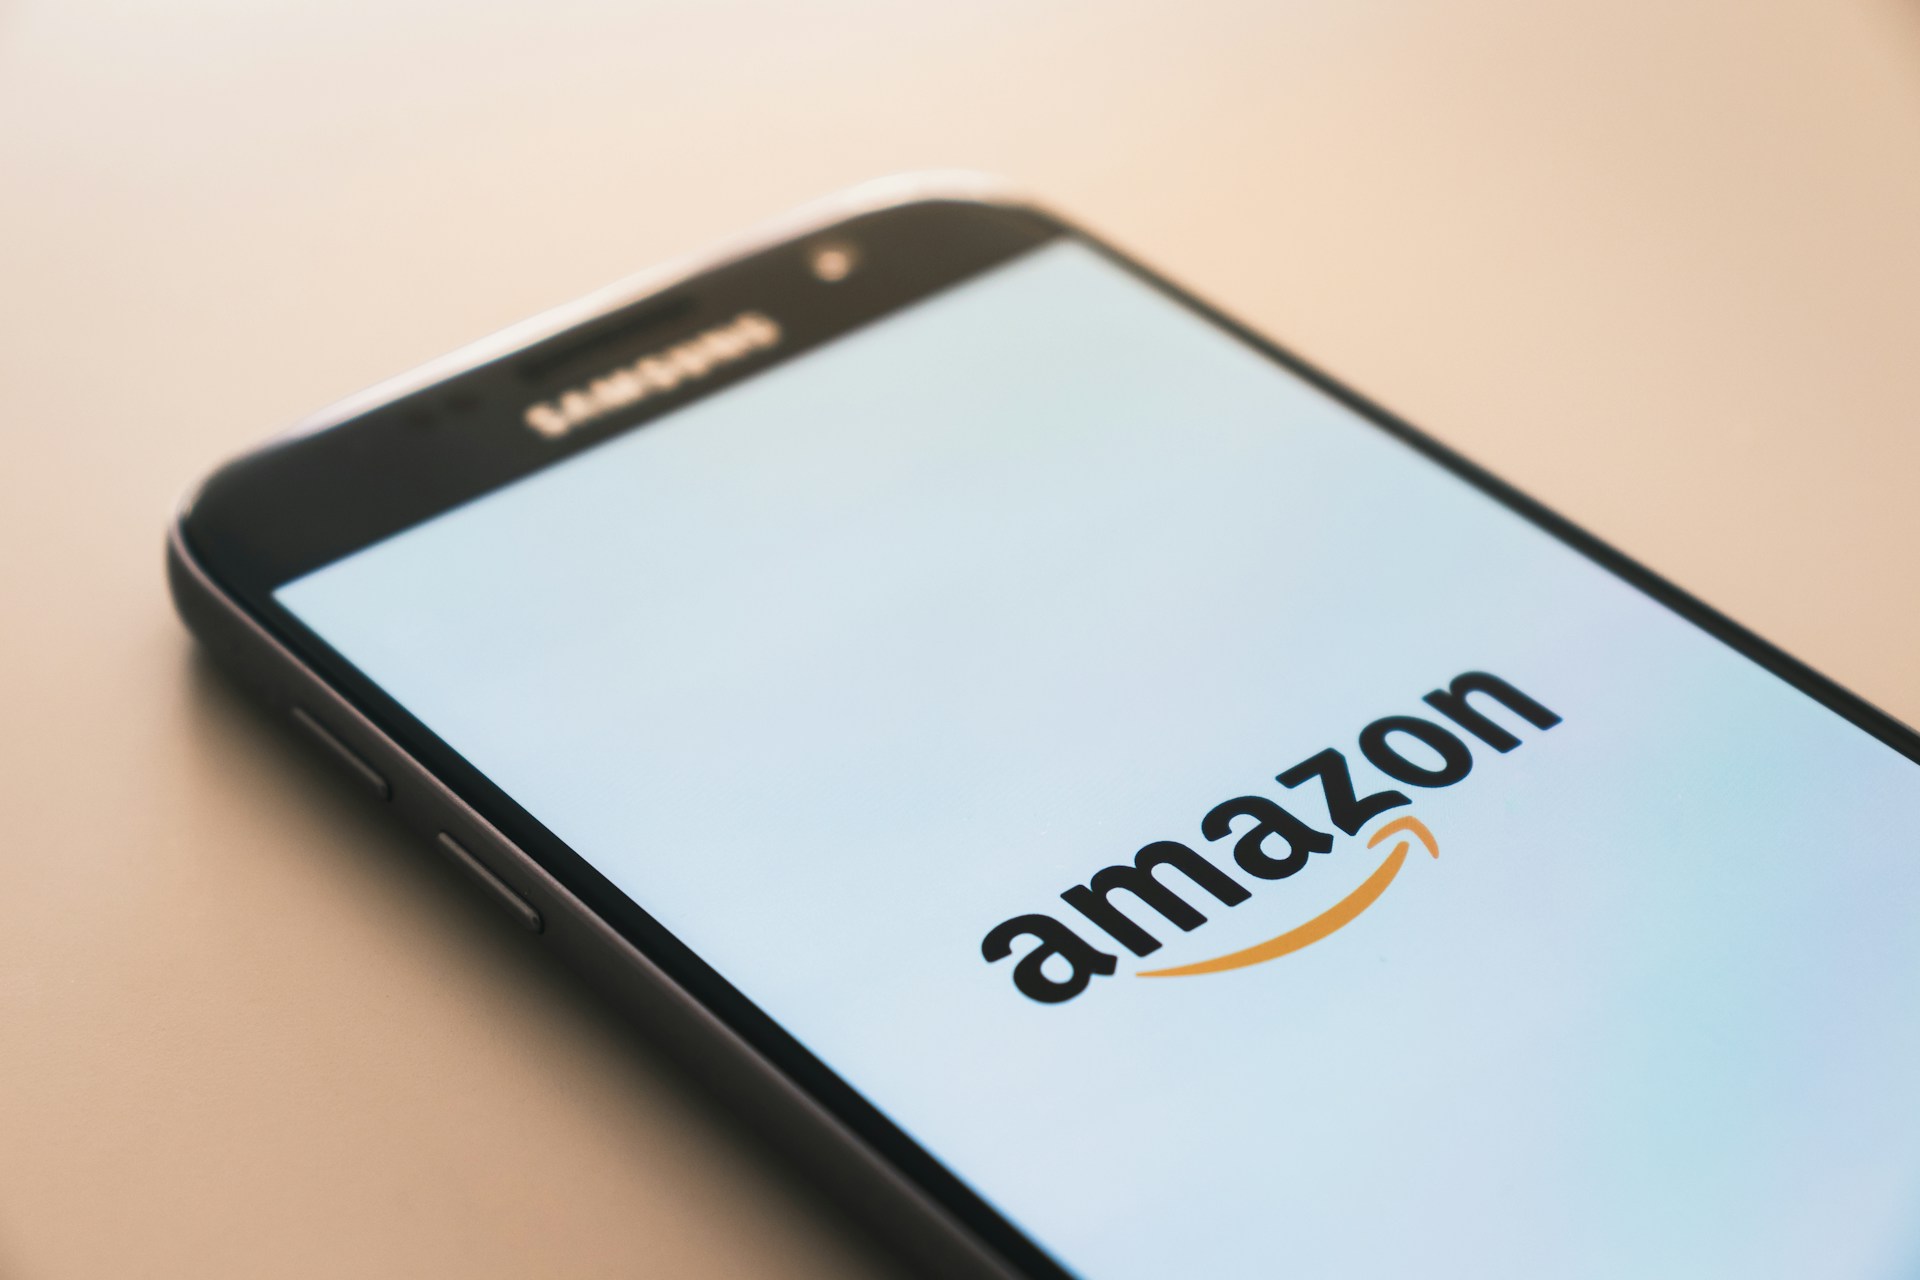 Amazon breidt beschikbaarheid uit van Q, een chatbot voor bedrijven met kunstmatige intelligentie